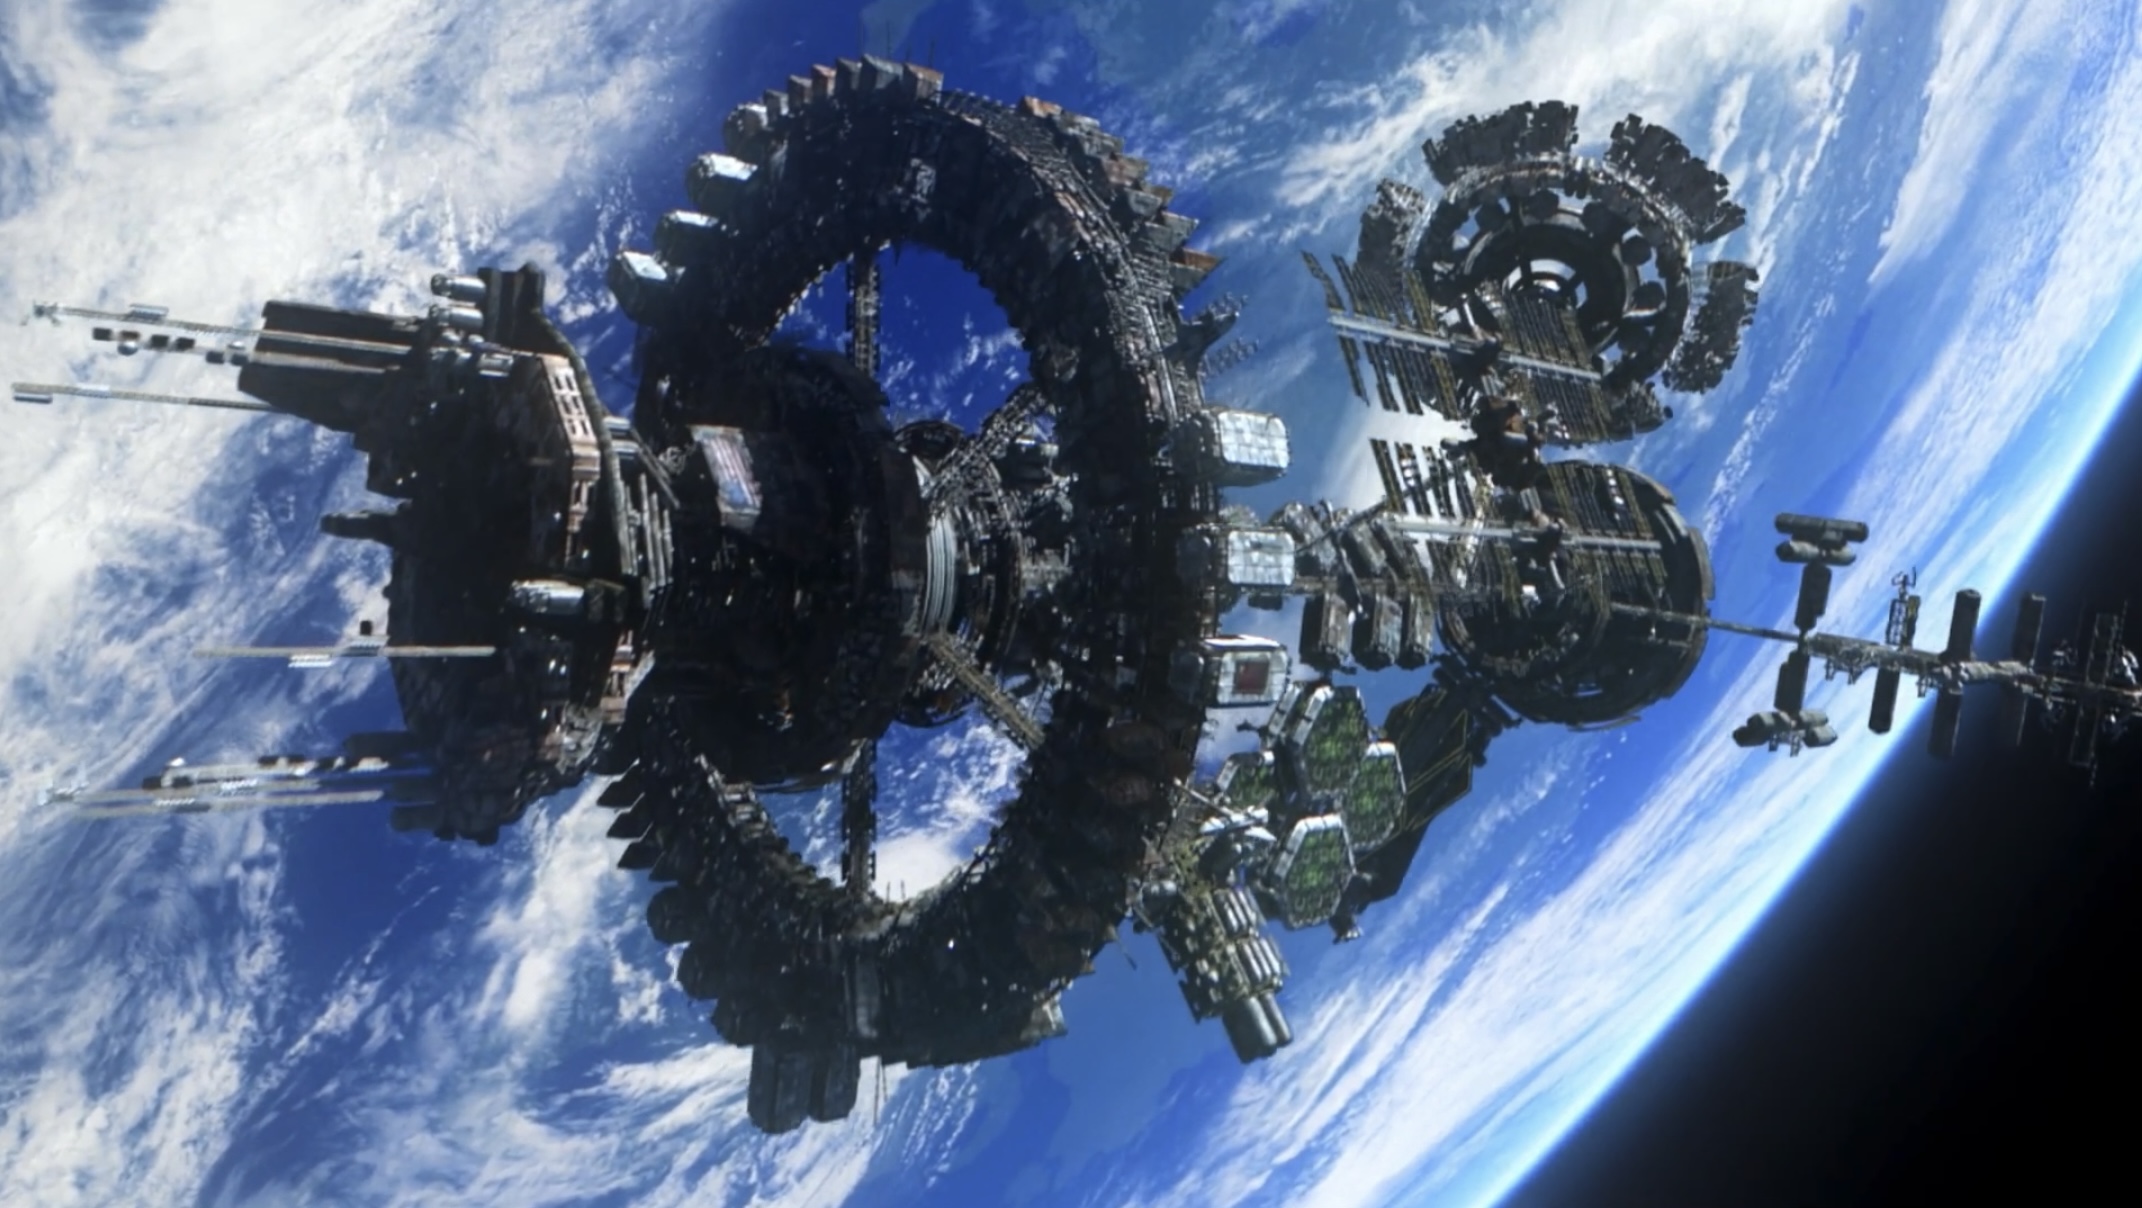 International Space Station - Wikipedia